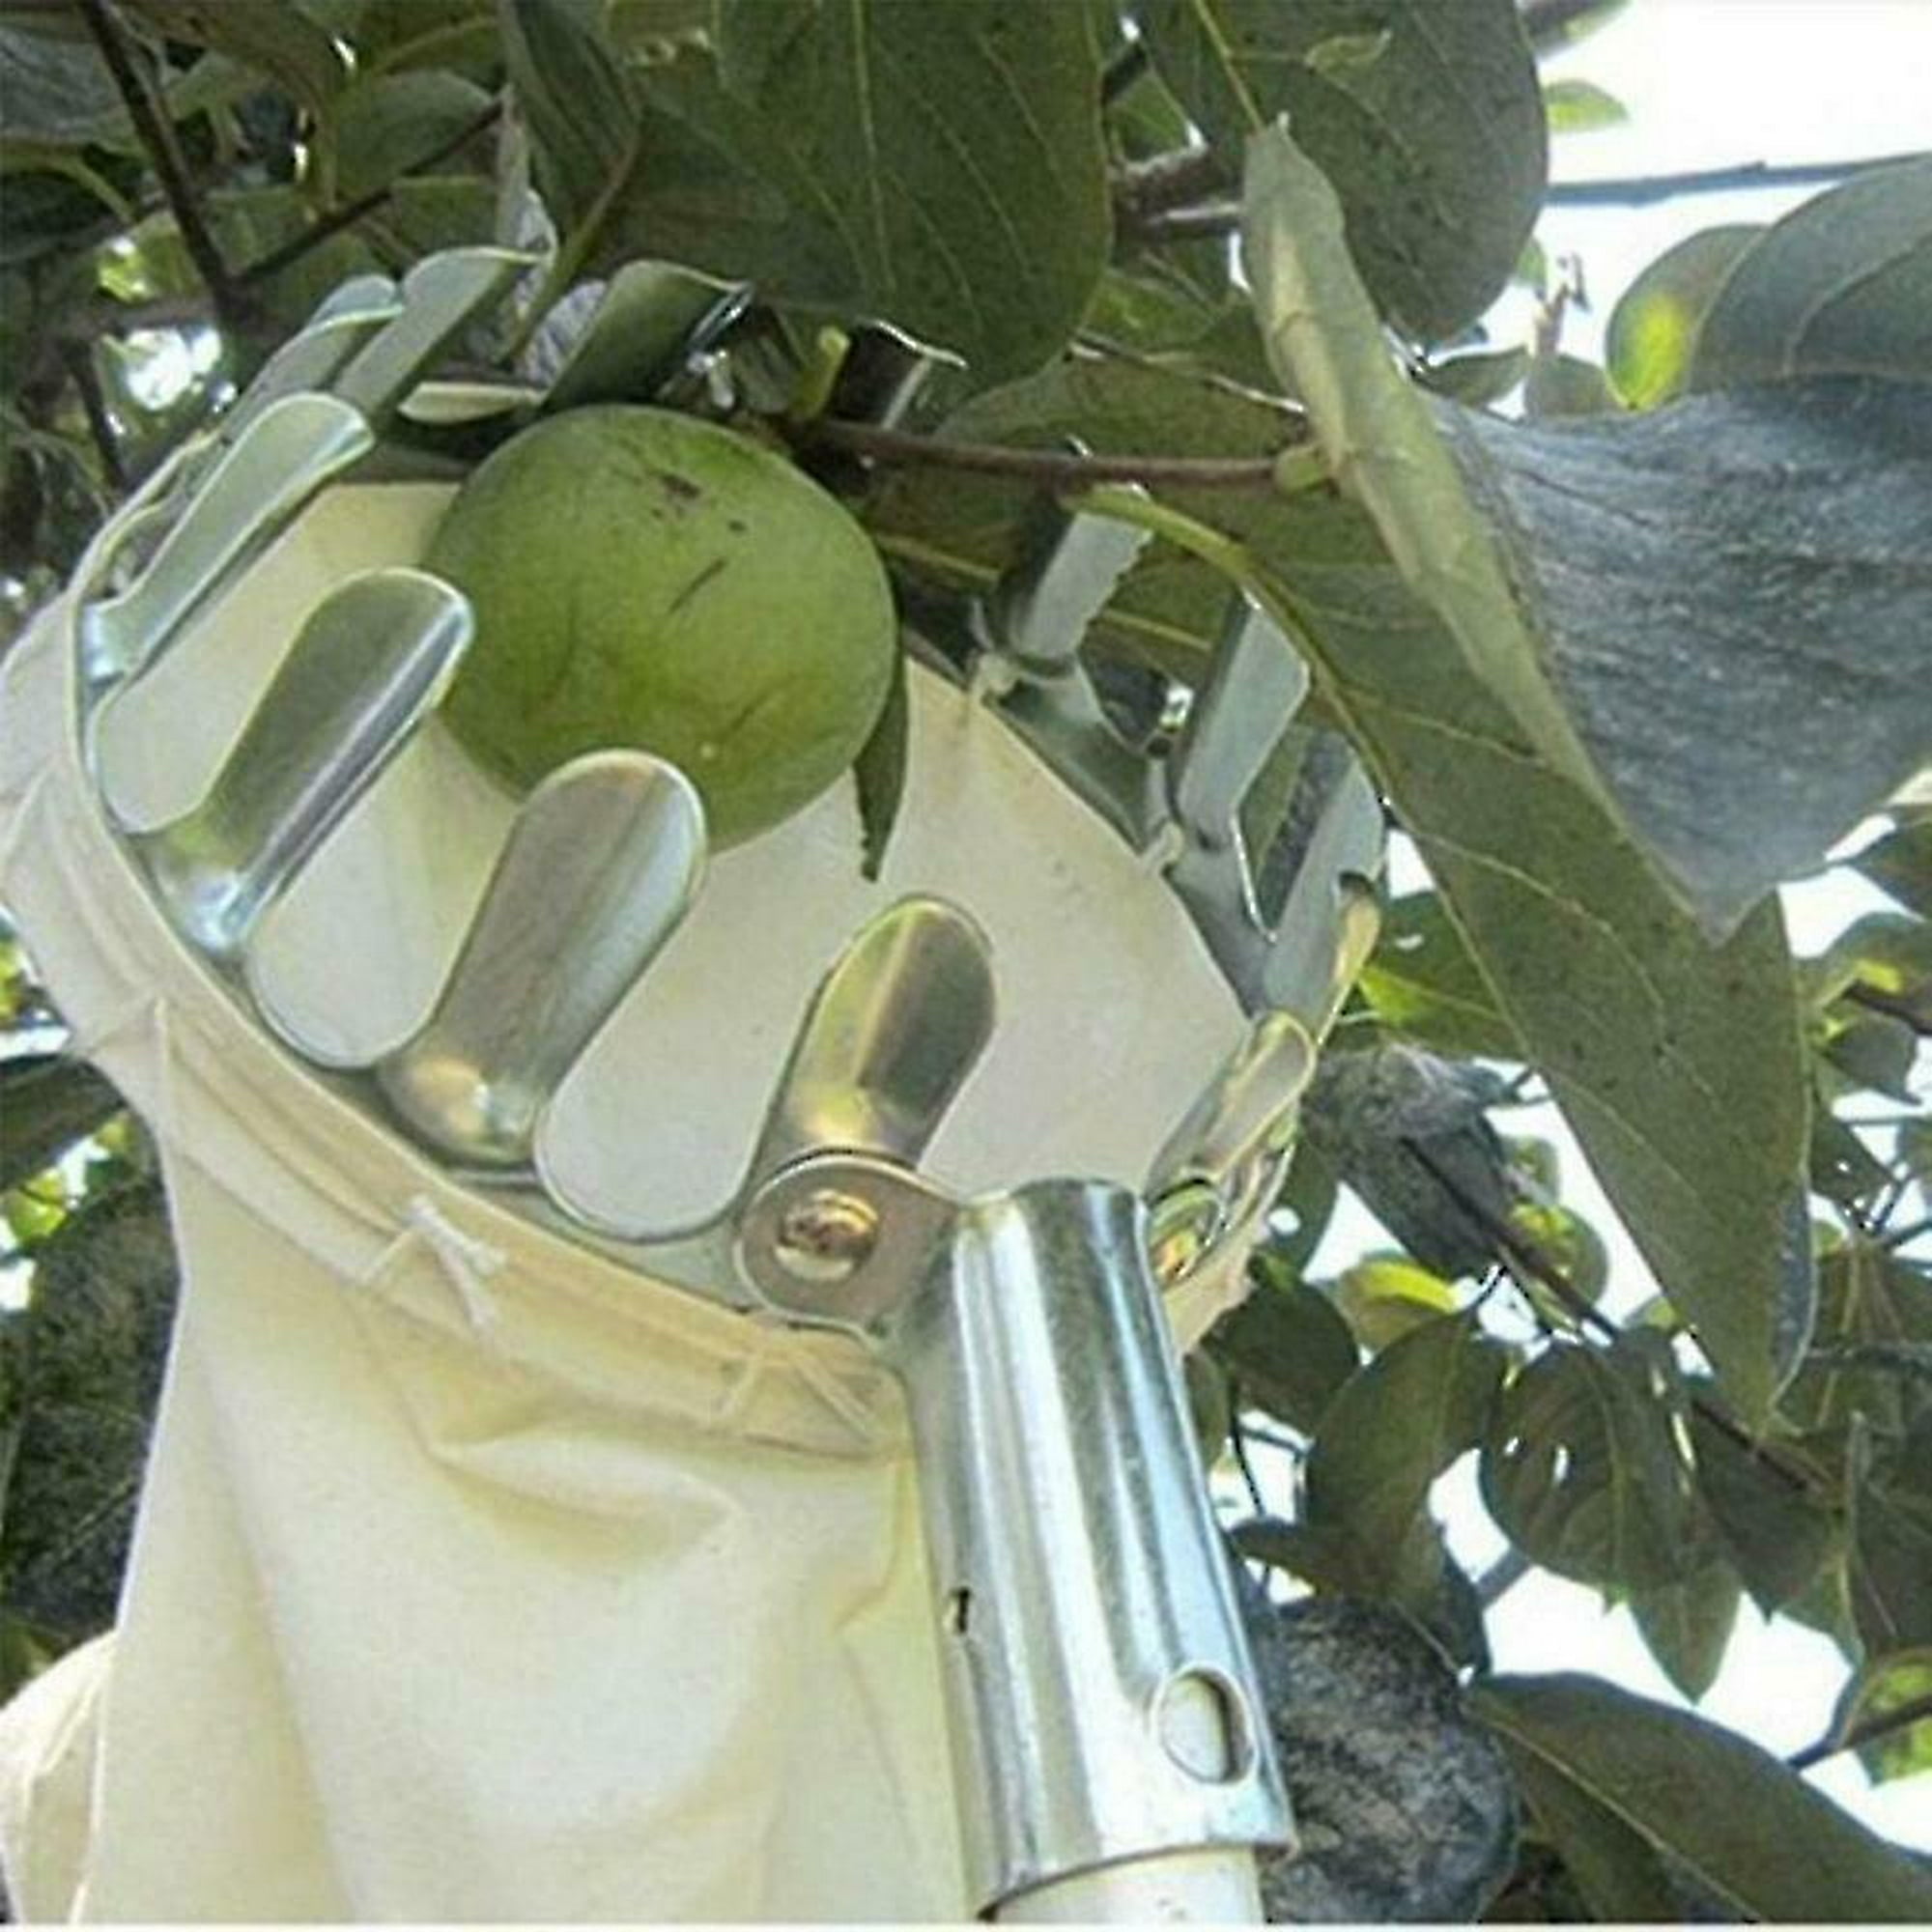 16cm diámetro] Recolector de frutas de metal Yeoman Huerto telescópico  Jardinería Herramienta de recolección de árboles altos 1 pieza, plata